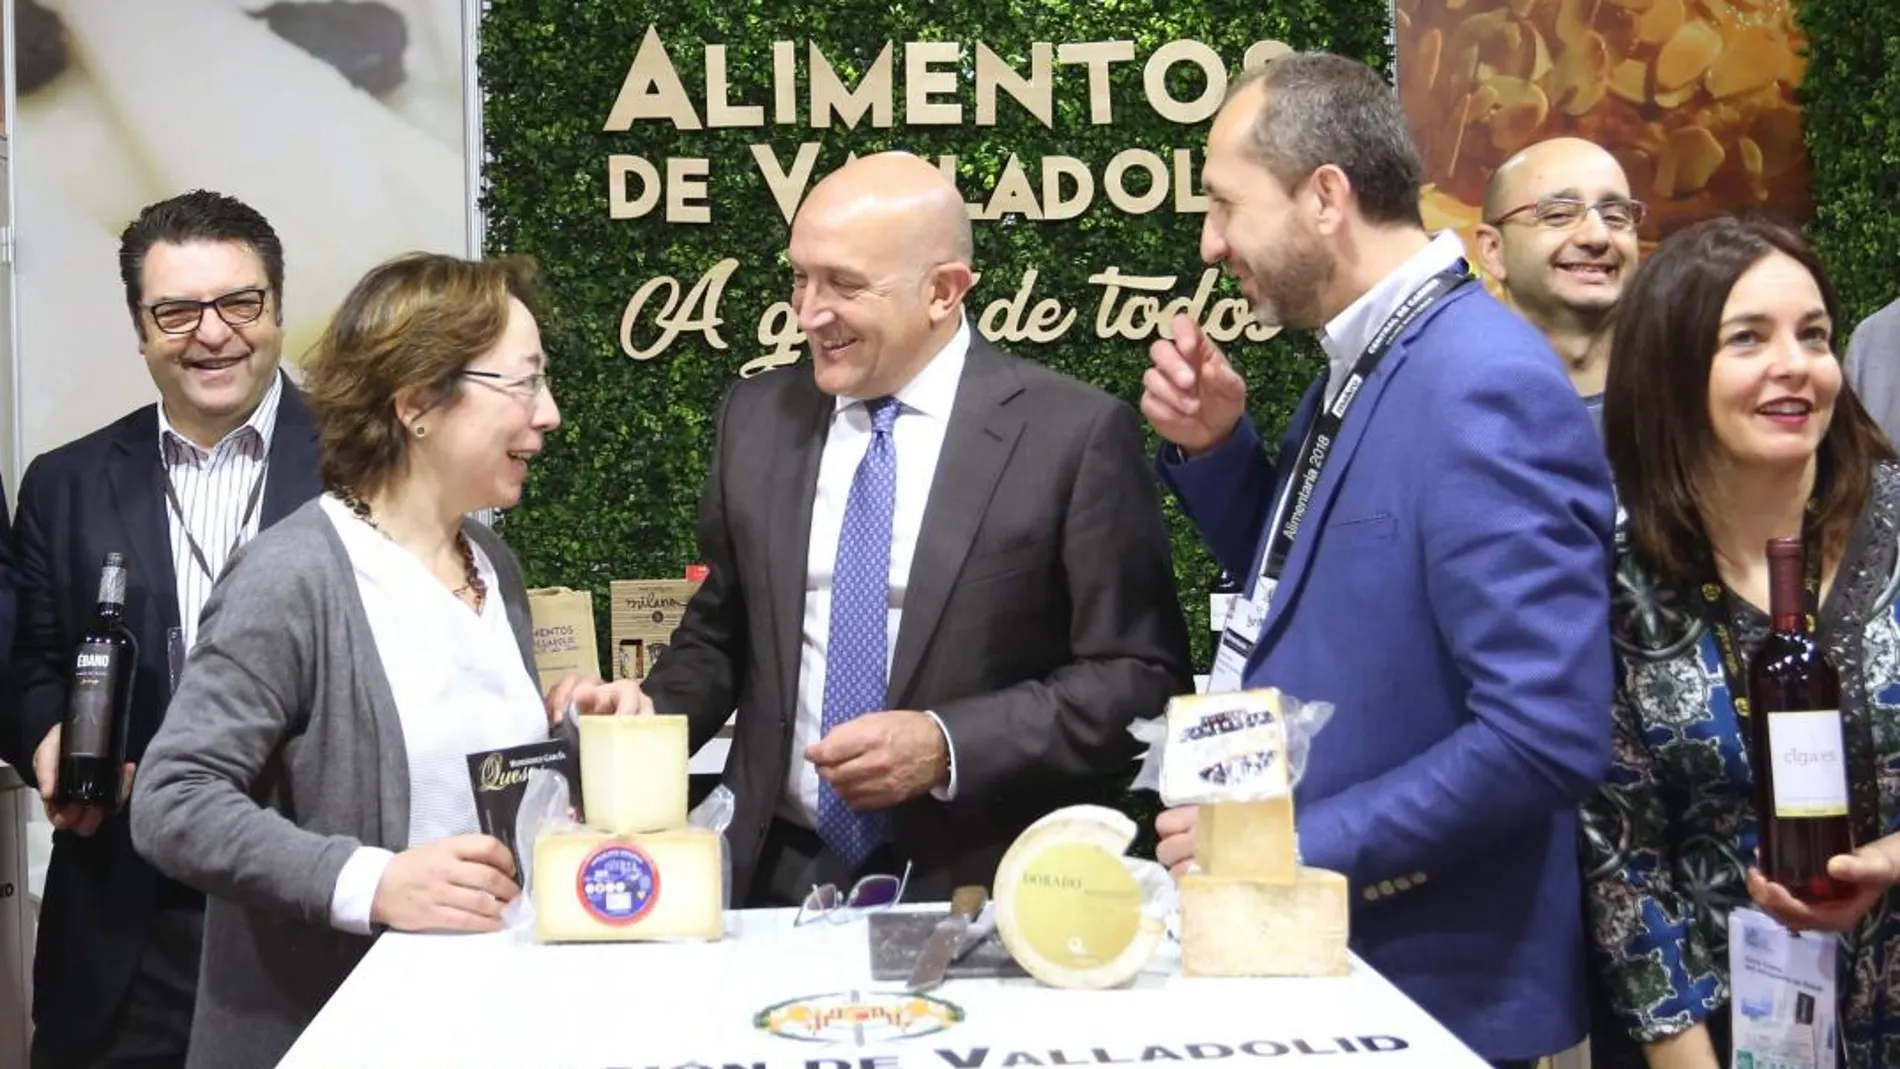 El presidente de la Diputación, Jesús Julio Carnero, visita el stand de Alimentos de Valladolid en la Feria Alimentaria que se celebra en Barcelona